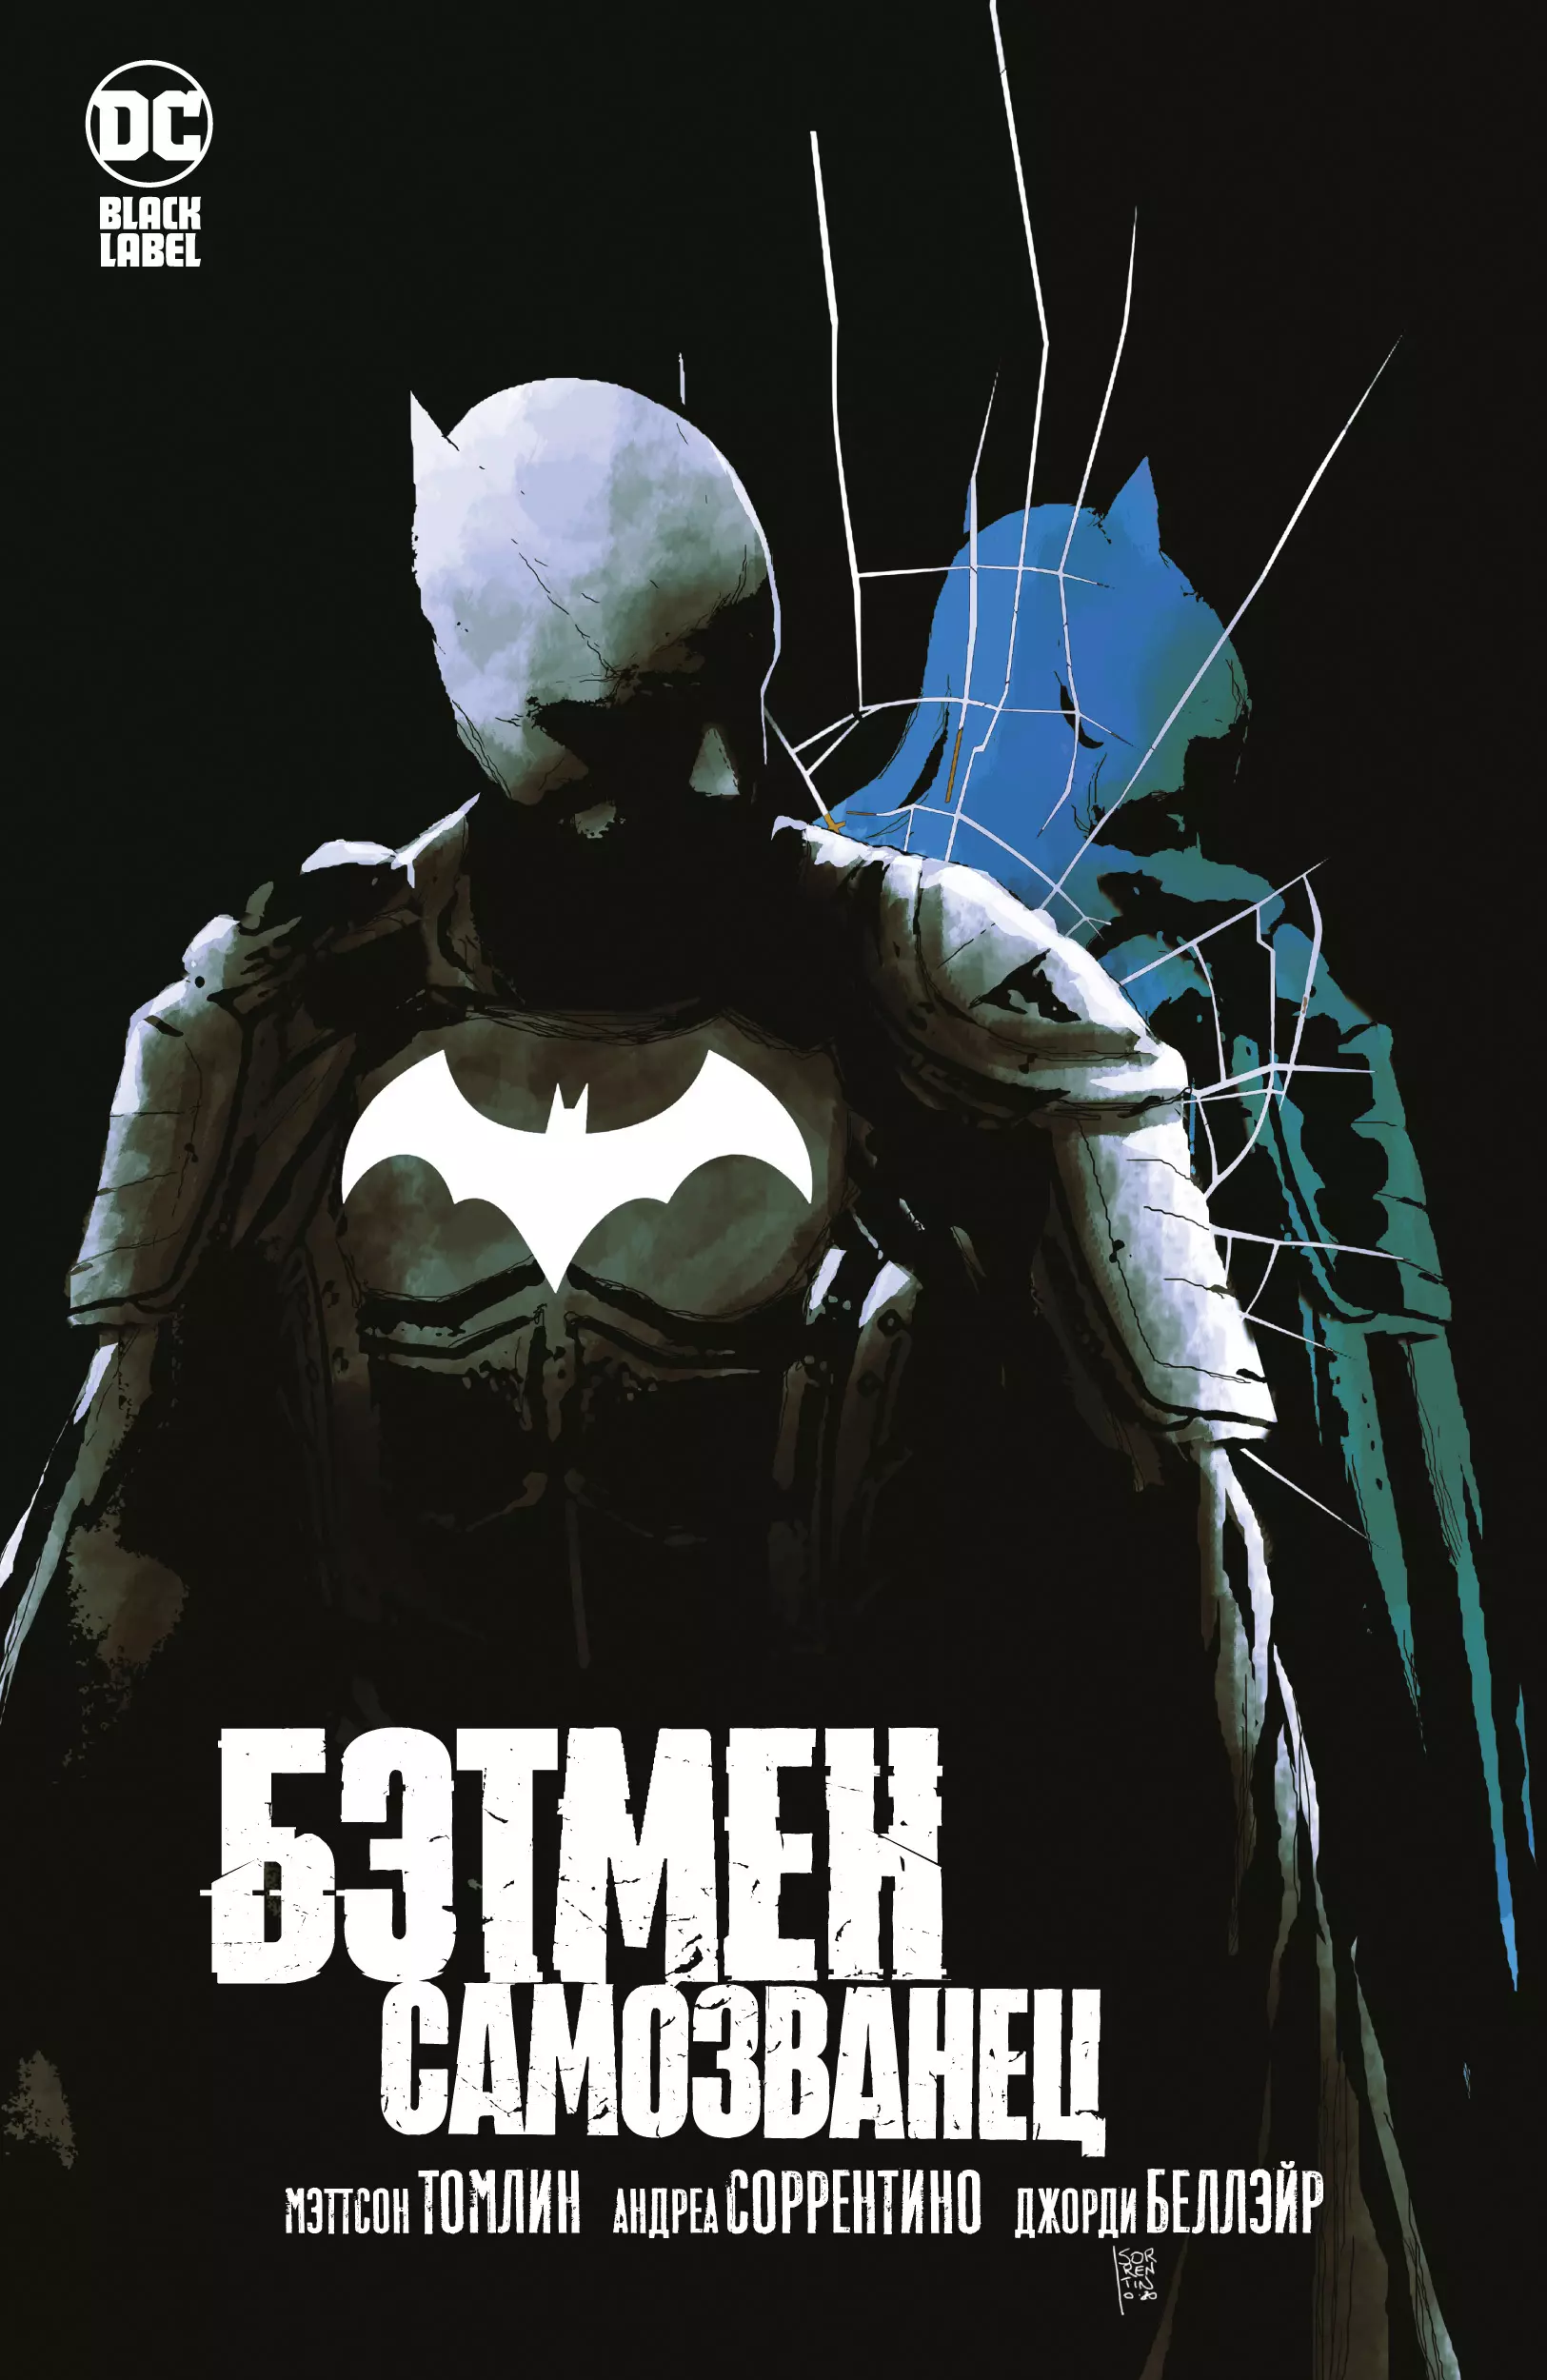 Бэтмен: Самозванец: графический роман брубейкер эд вишнякова екатерина макдэниел скотт бэтмен проект темный рыцарь графический роман